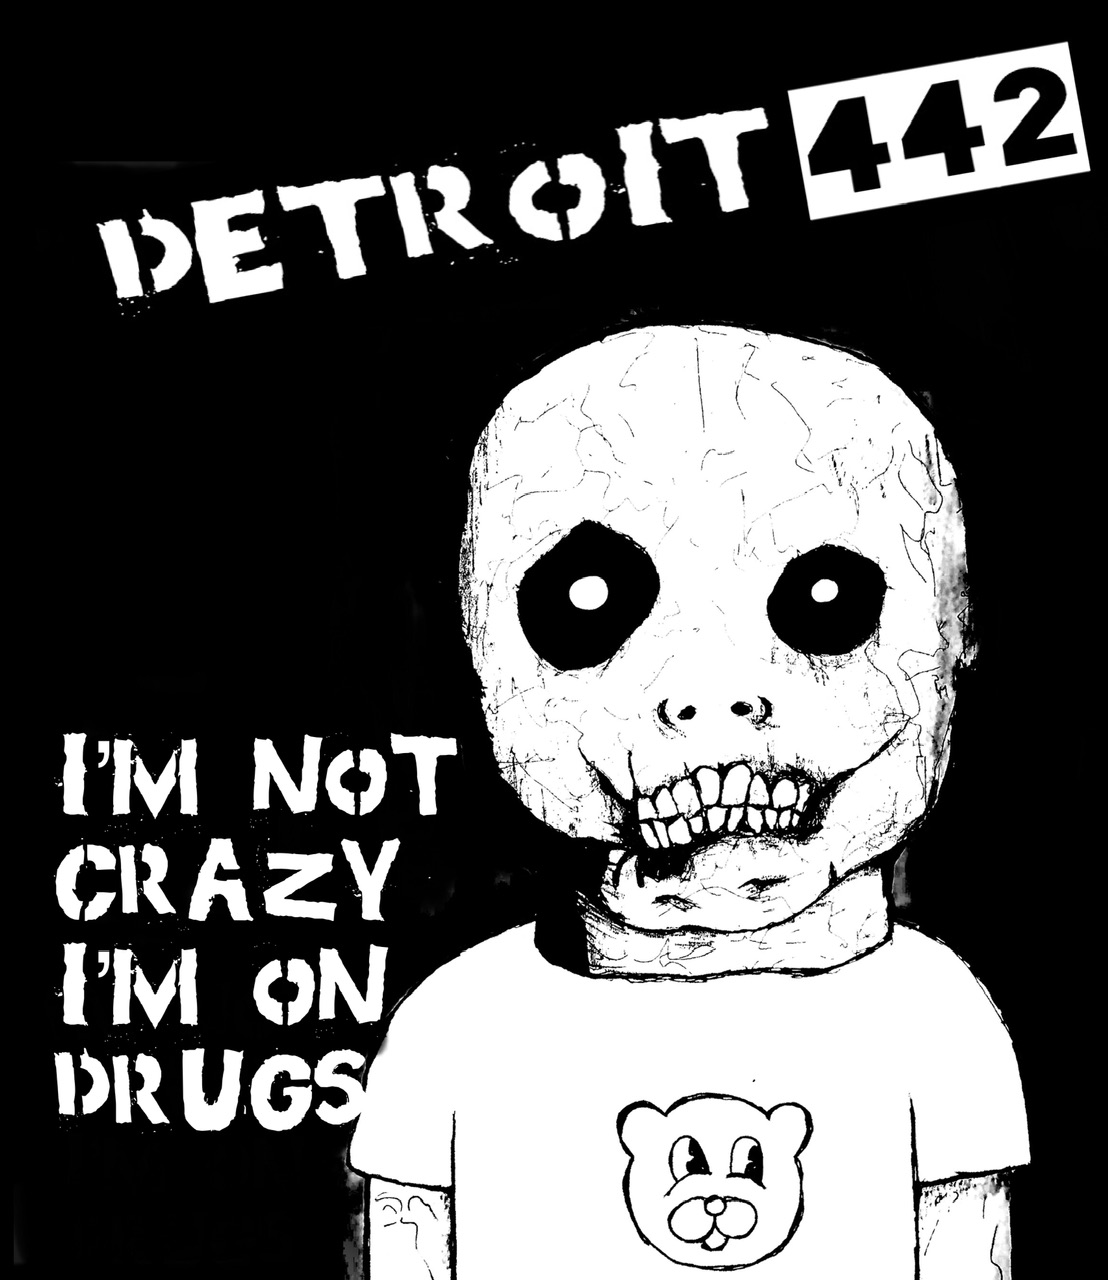 Detroit 442